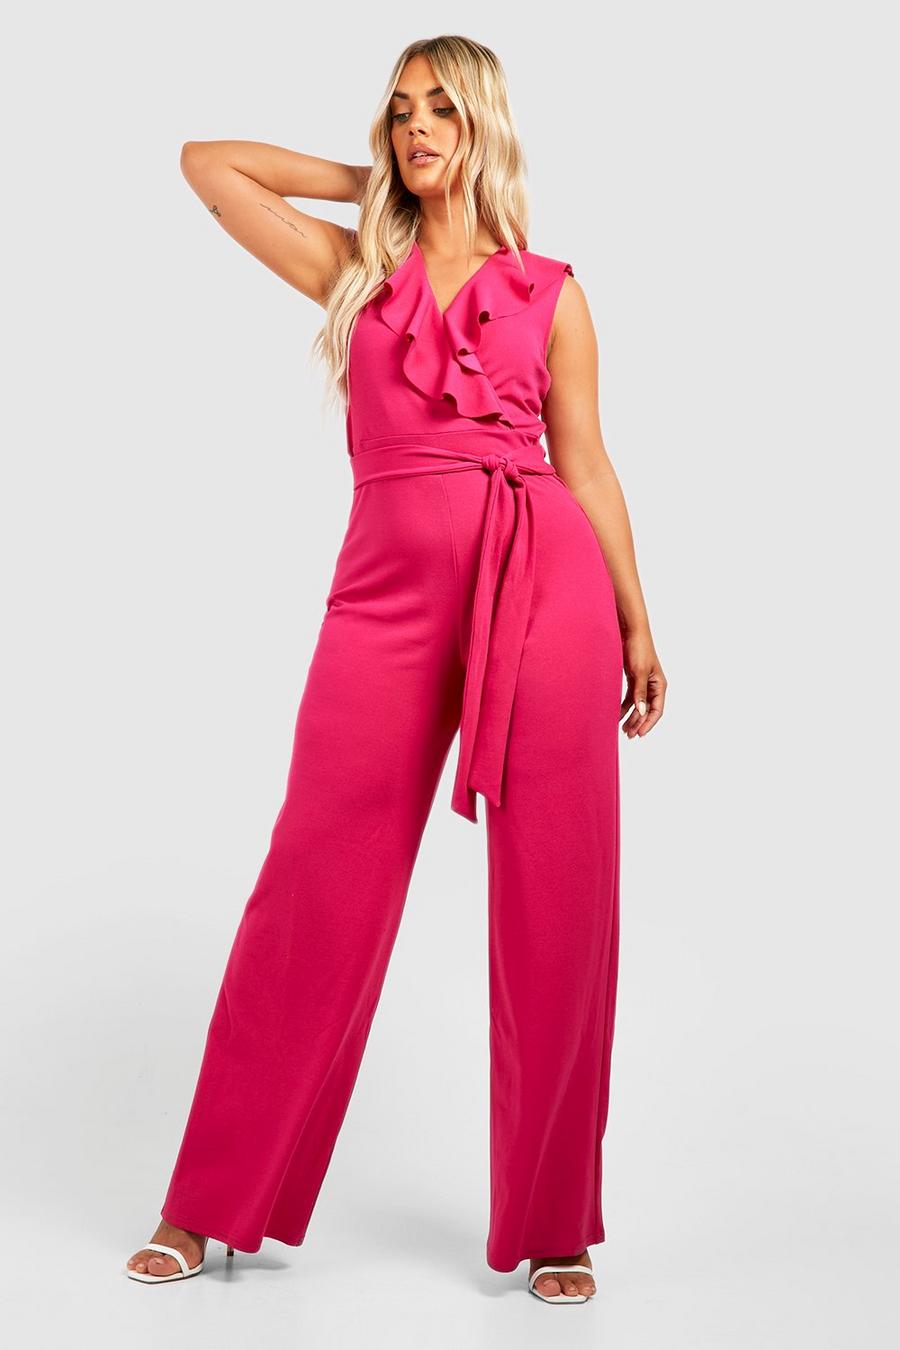 Grande taille - Combinaison jupe-culotte à volants, Hot pink